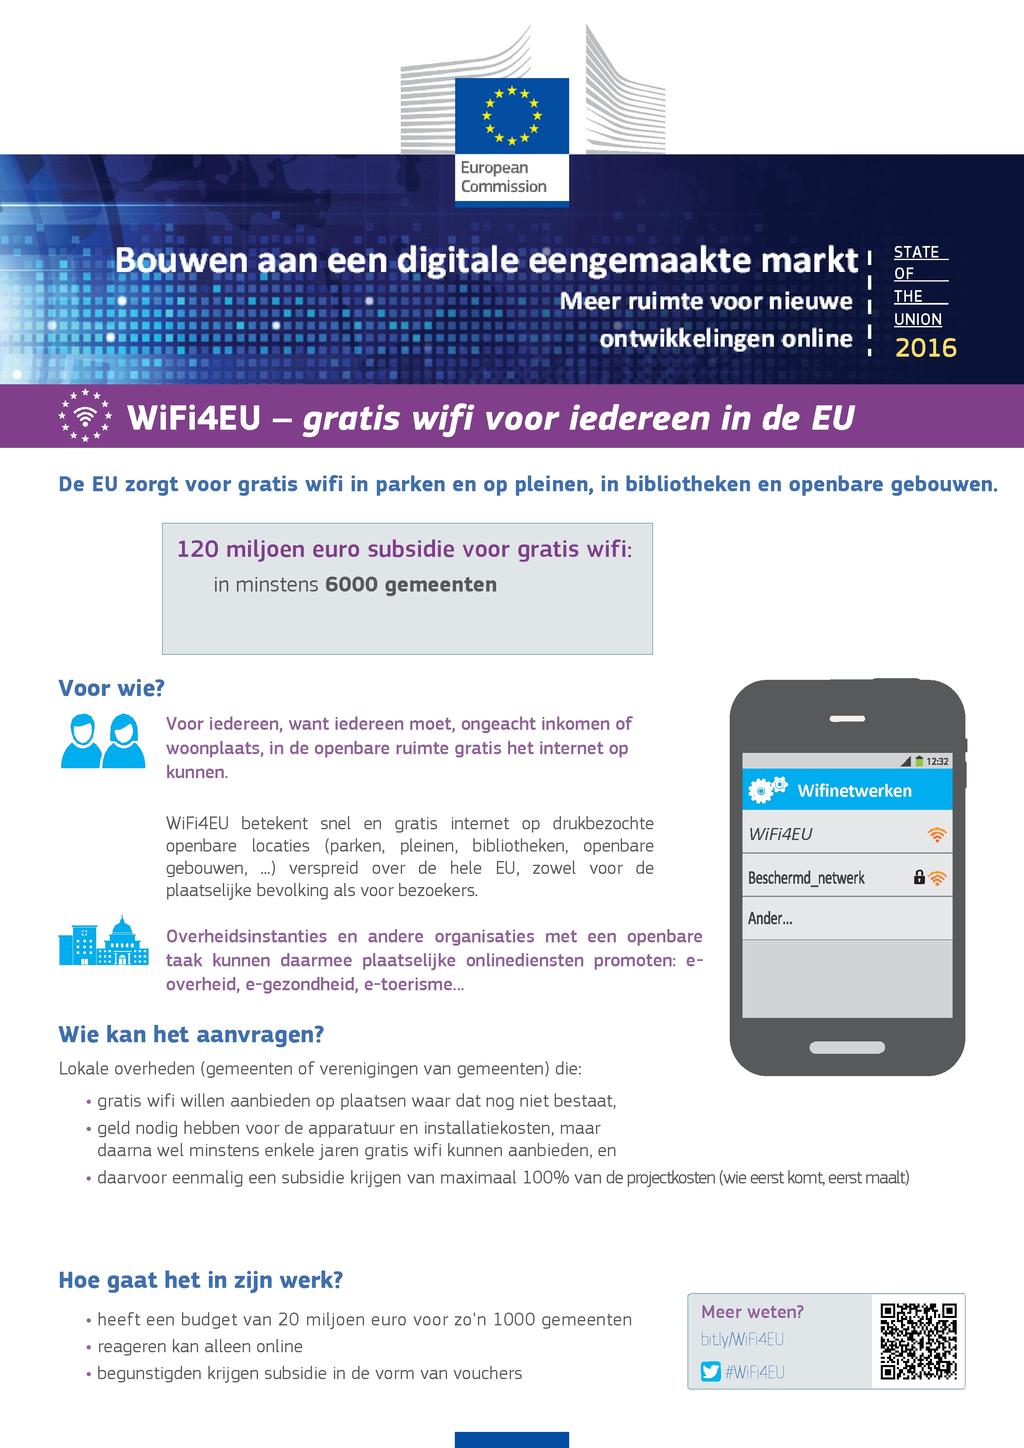 European Commission Bouwen aan een digitale eengemaakte markt I I Meer ruimte voor nieuwe i STATE OF THE UNION ontwikkelingen online 1 2016 WiFi4EU - gratis wifi voor iedereen in de EU De EU zorgt